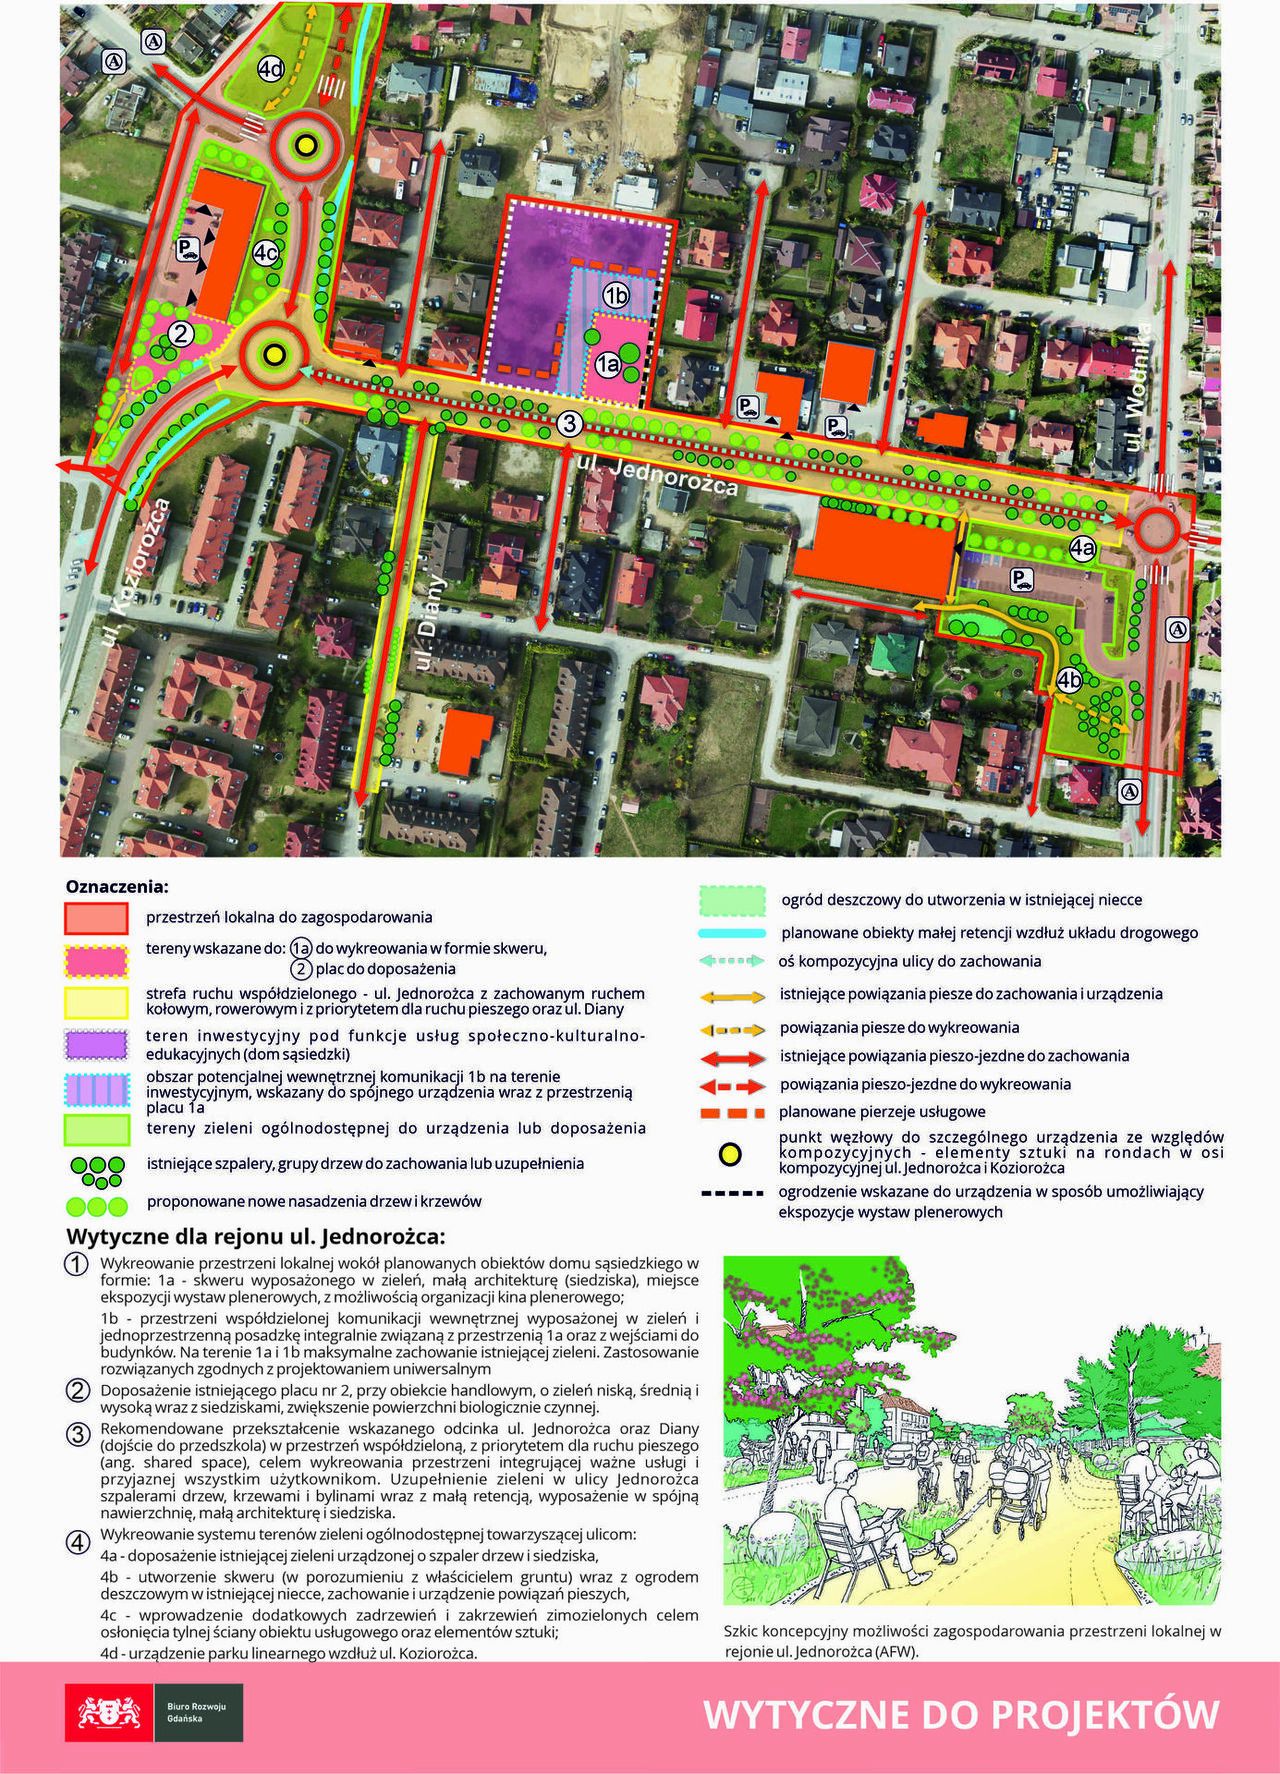 Karta Gdańskiej Przestrzeni Lokalnej w rejonie ulicy Jednorożca - wytyczne do przyszłych projektów